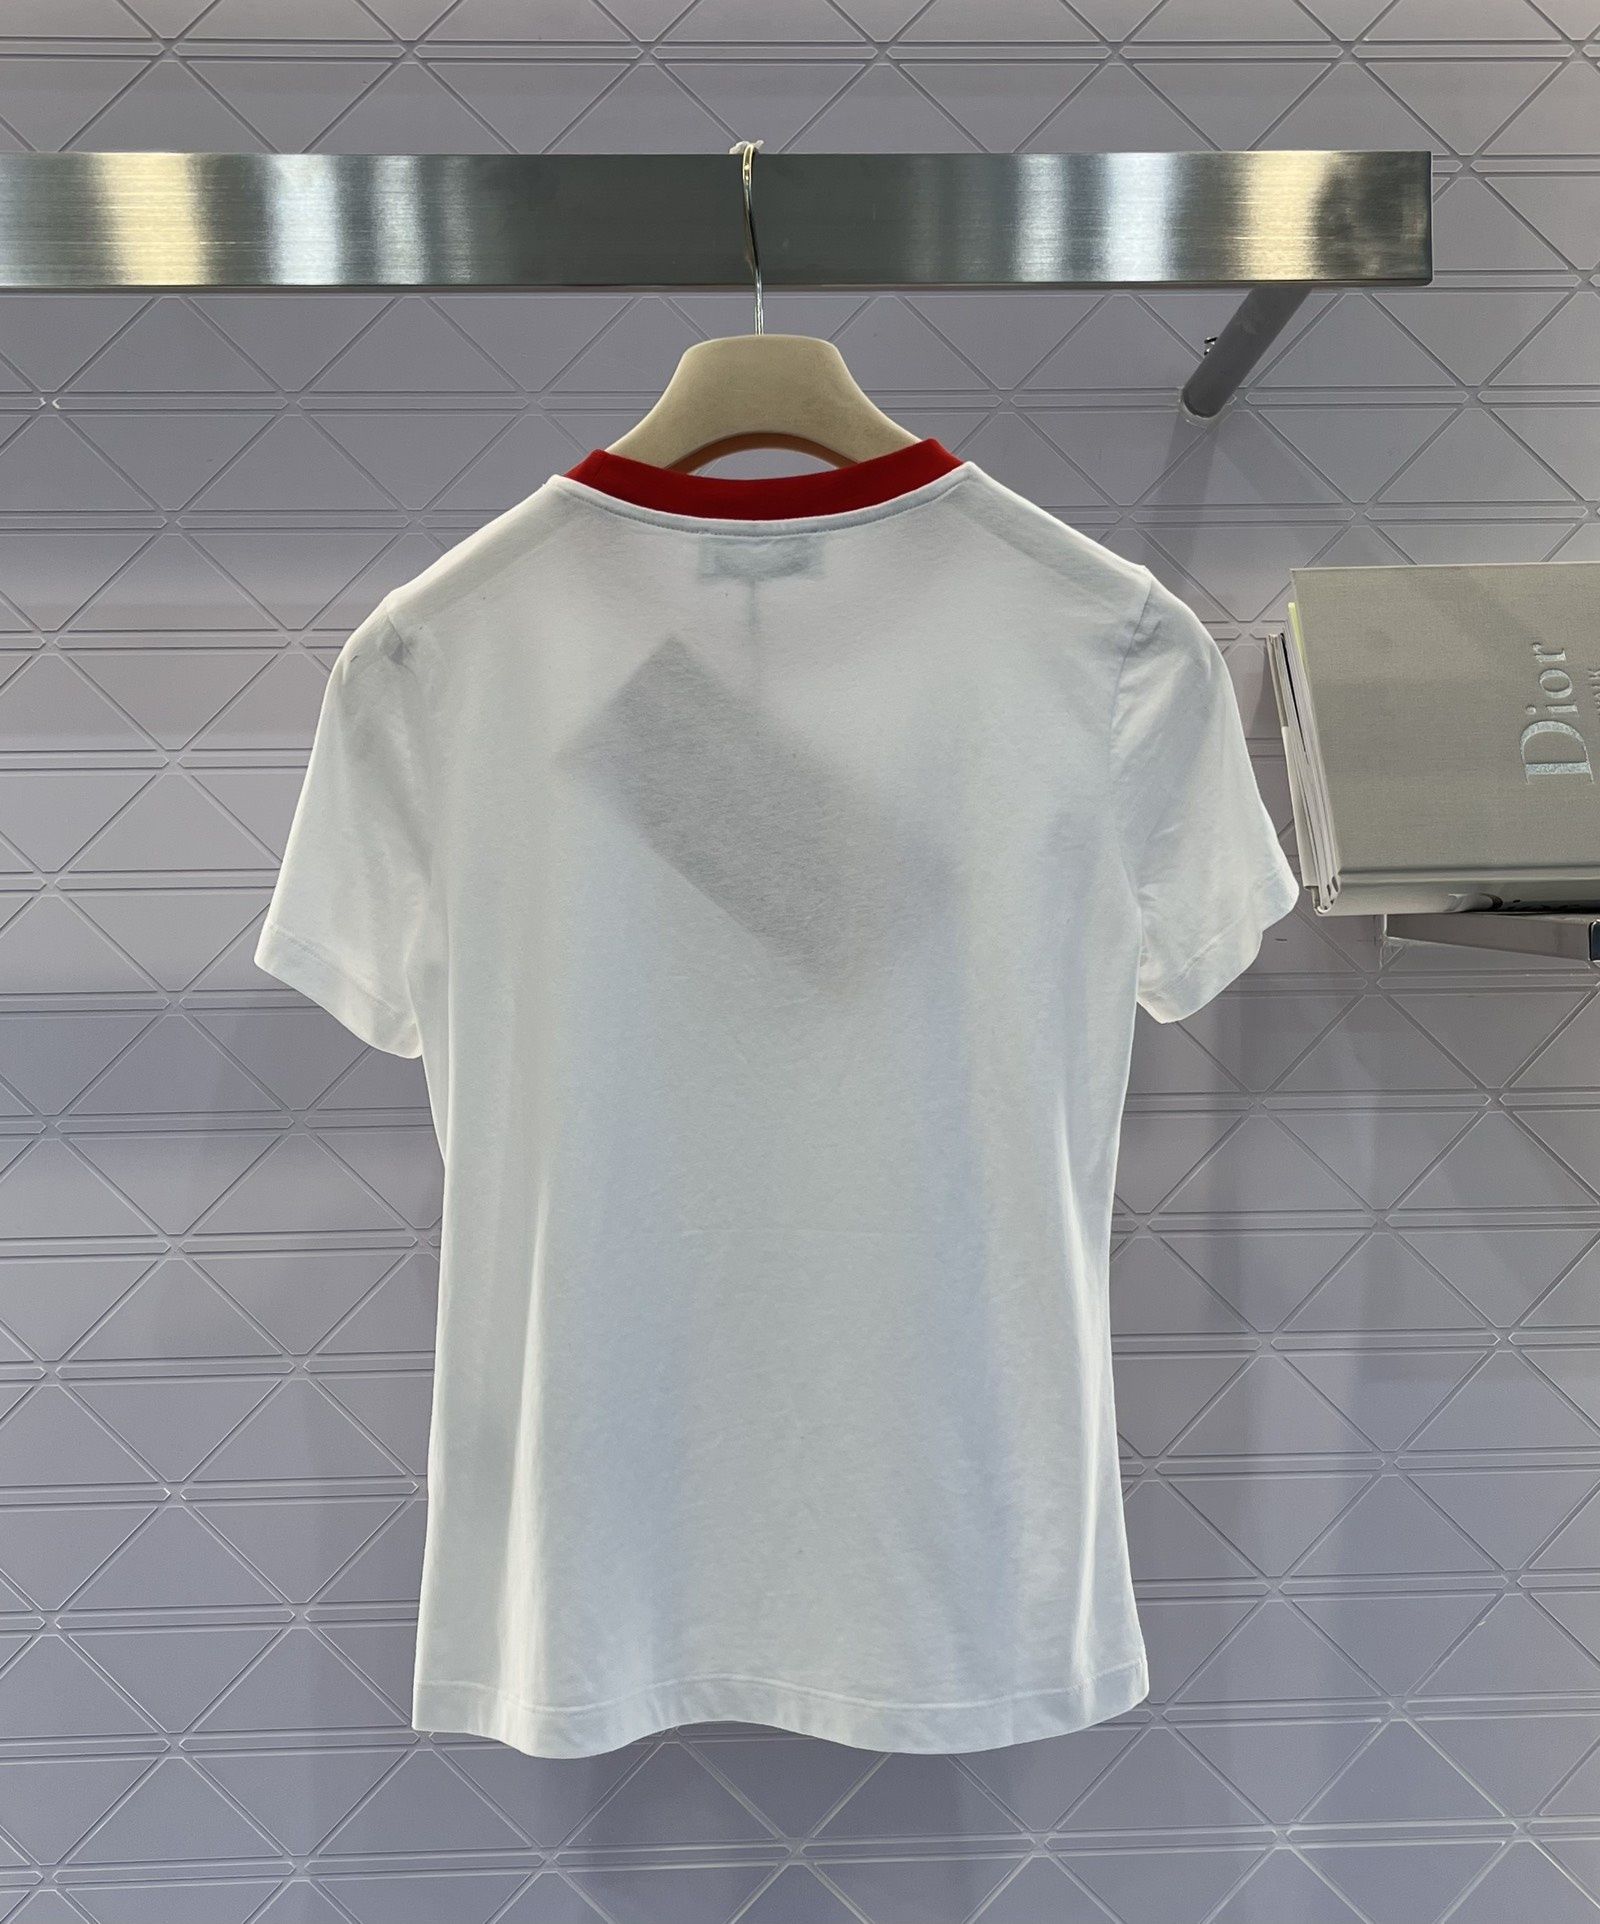 MIU MIU® Luksusowy T-shirt ekskluzywna bluzka logowana markowa bluza